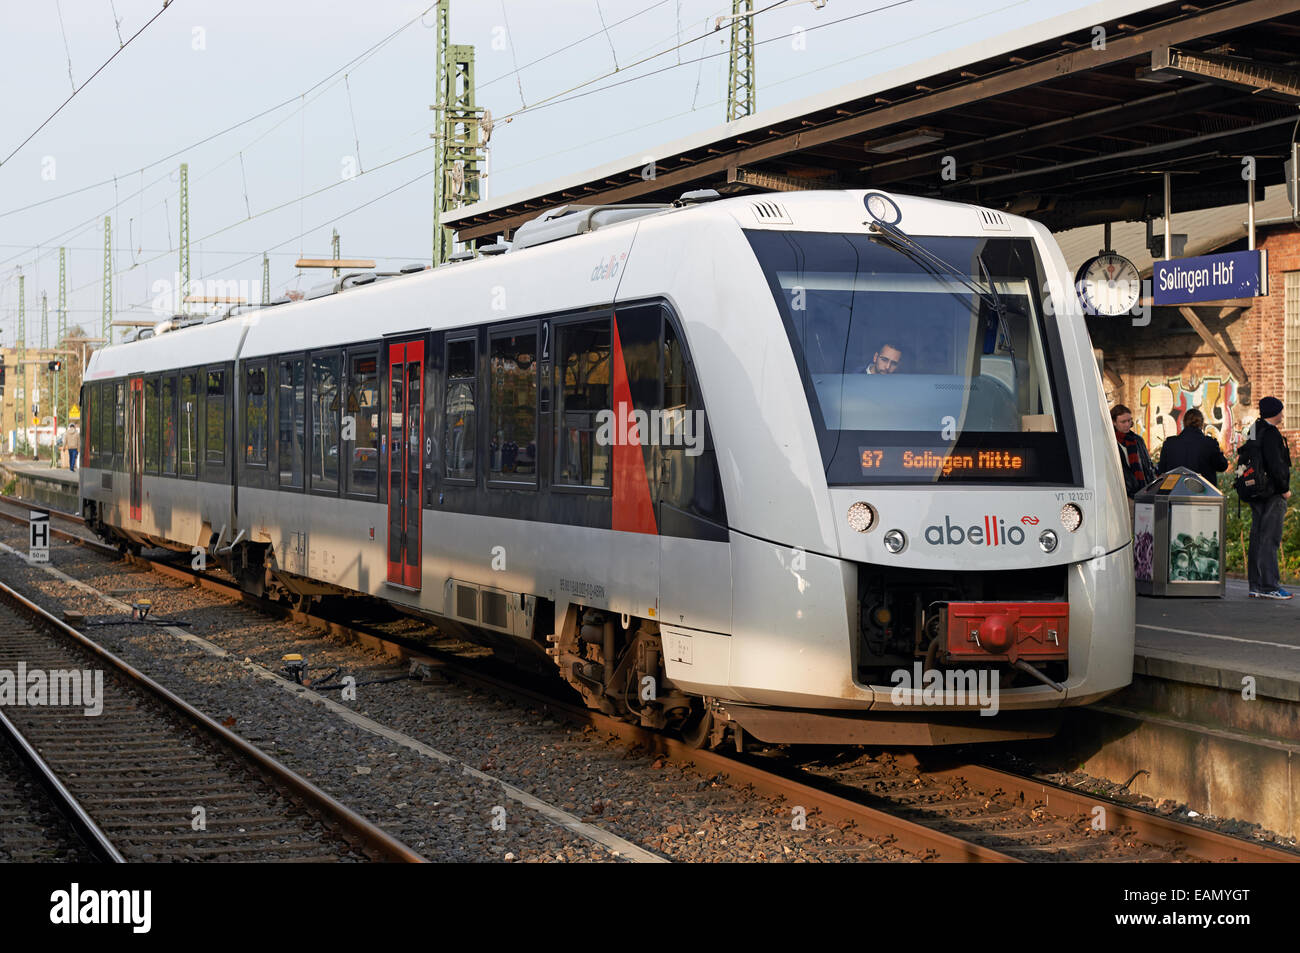 S7-Abellio lokaler Personenzug Service, Solingen, Nordrhein-Westfalen, Deutschland. Stockfoto